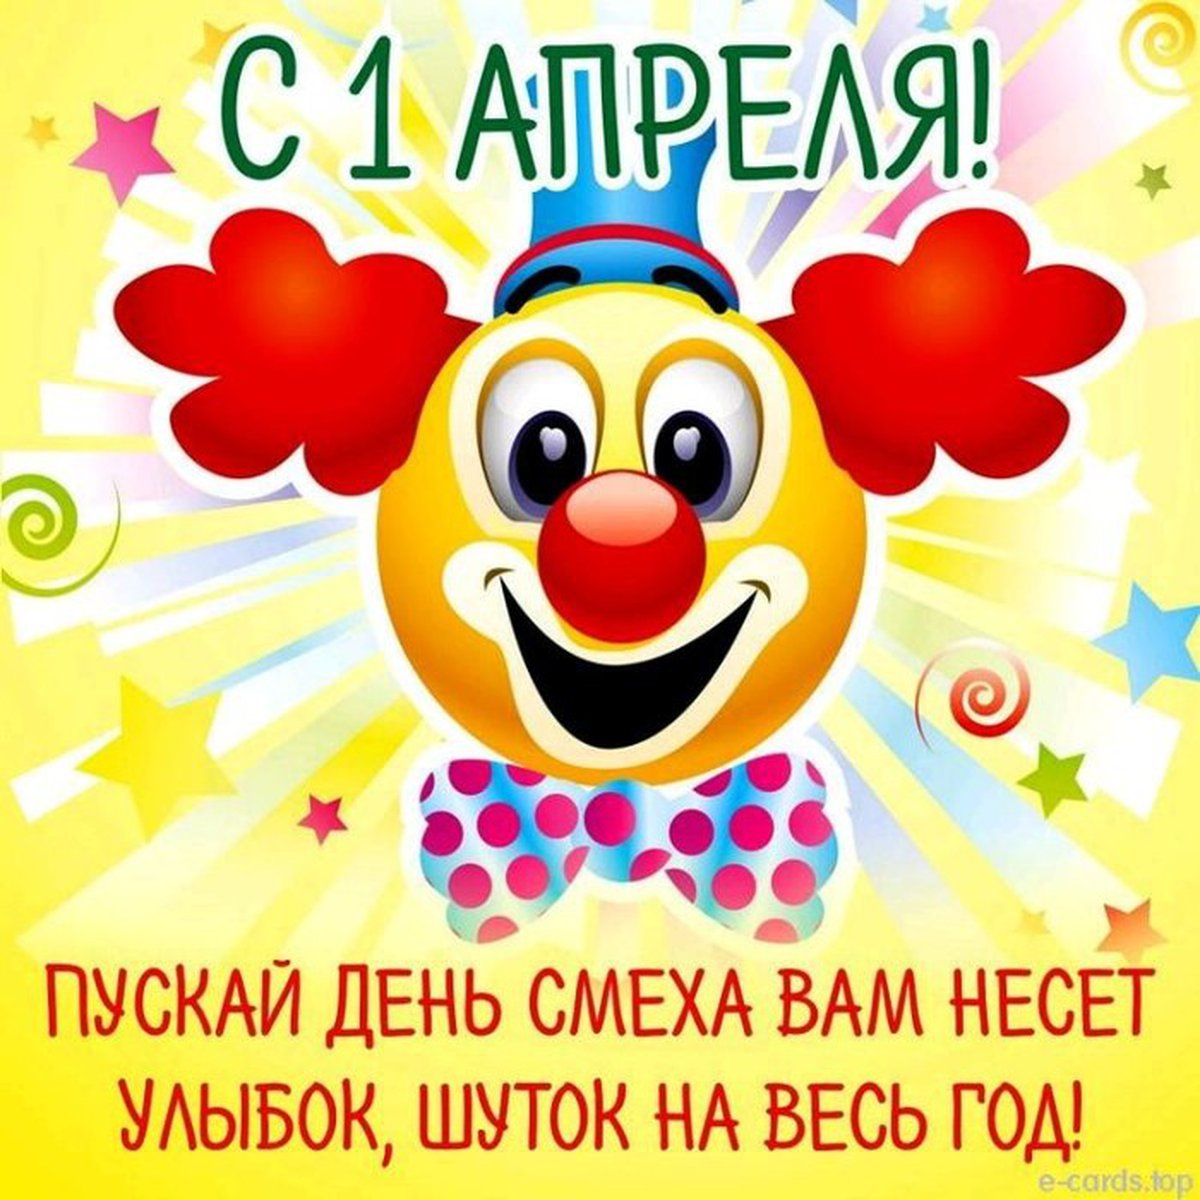 Доброе утро 1 апреля день смеха картинки. День смеха. День смеха картинки. День юмора и смеха. День смеха в России.